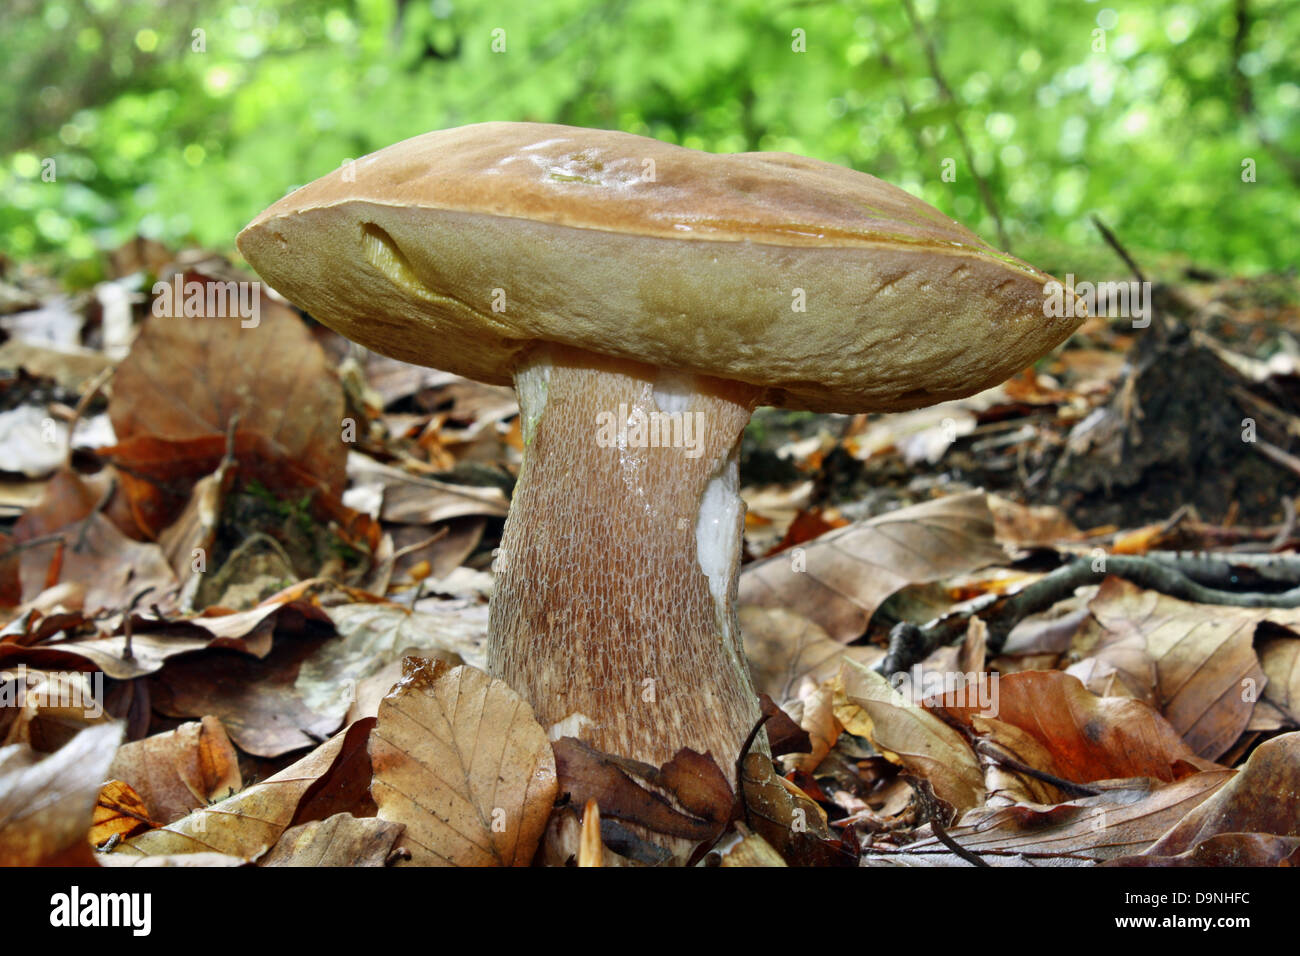 фото съедобных грибов омской области